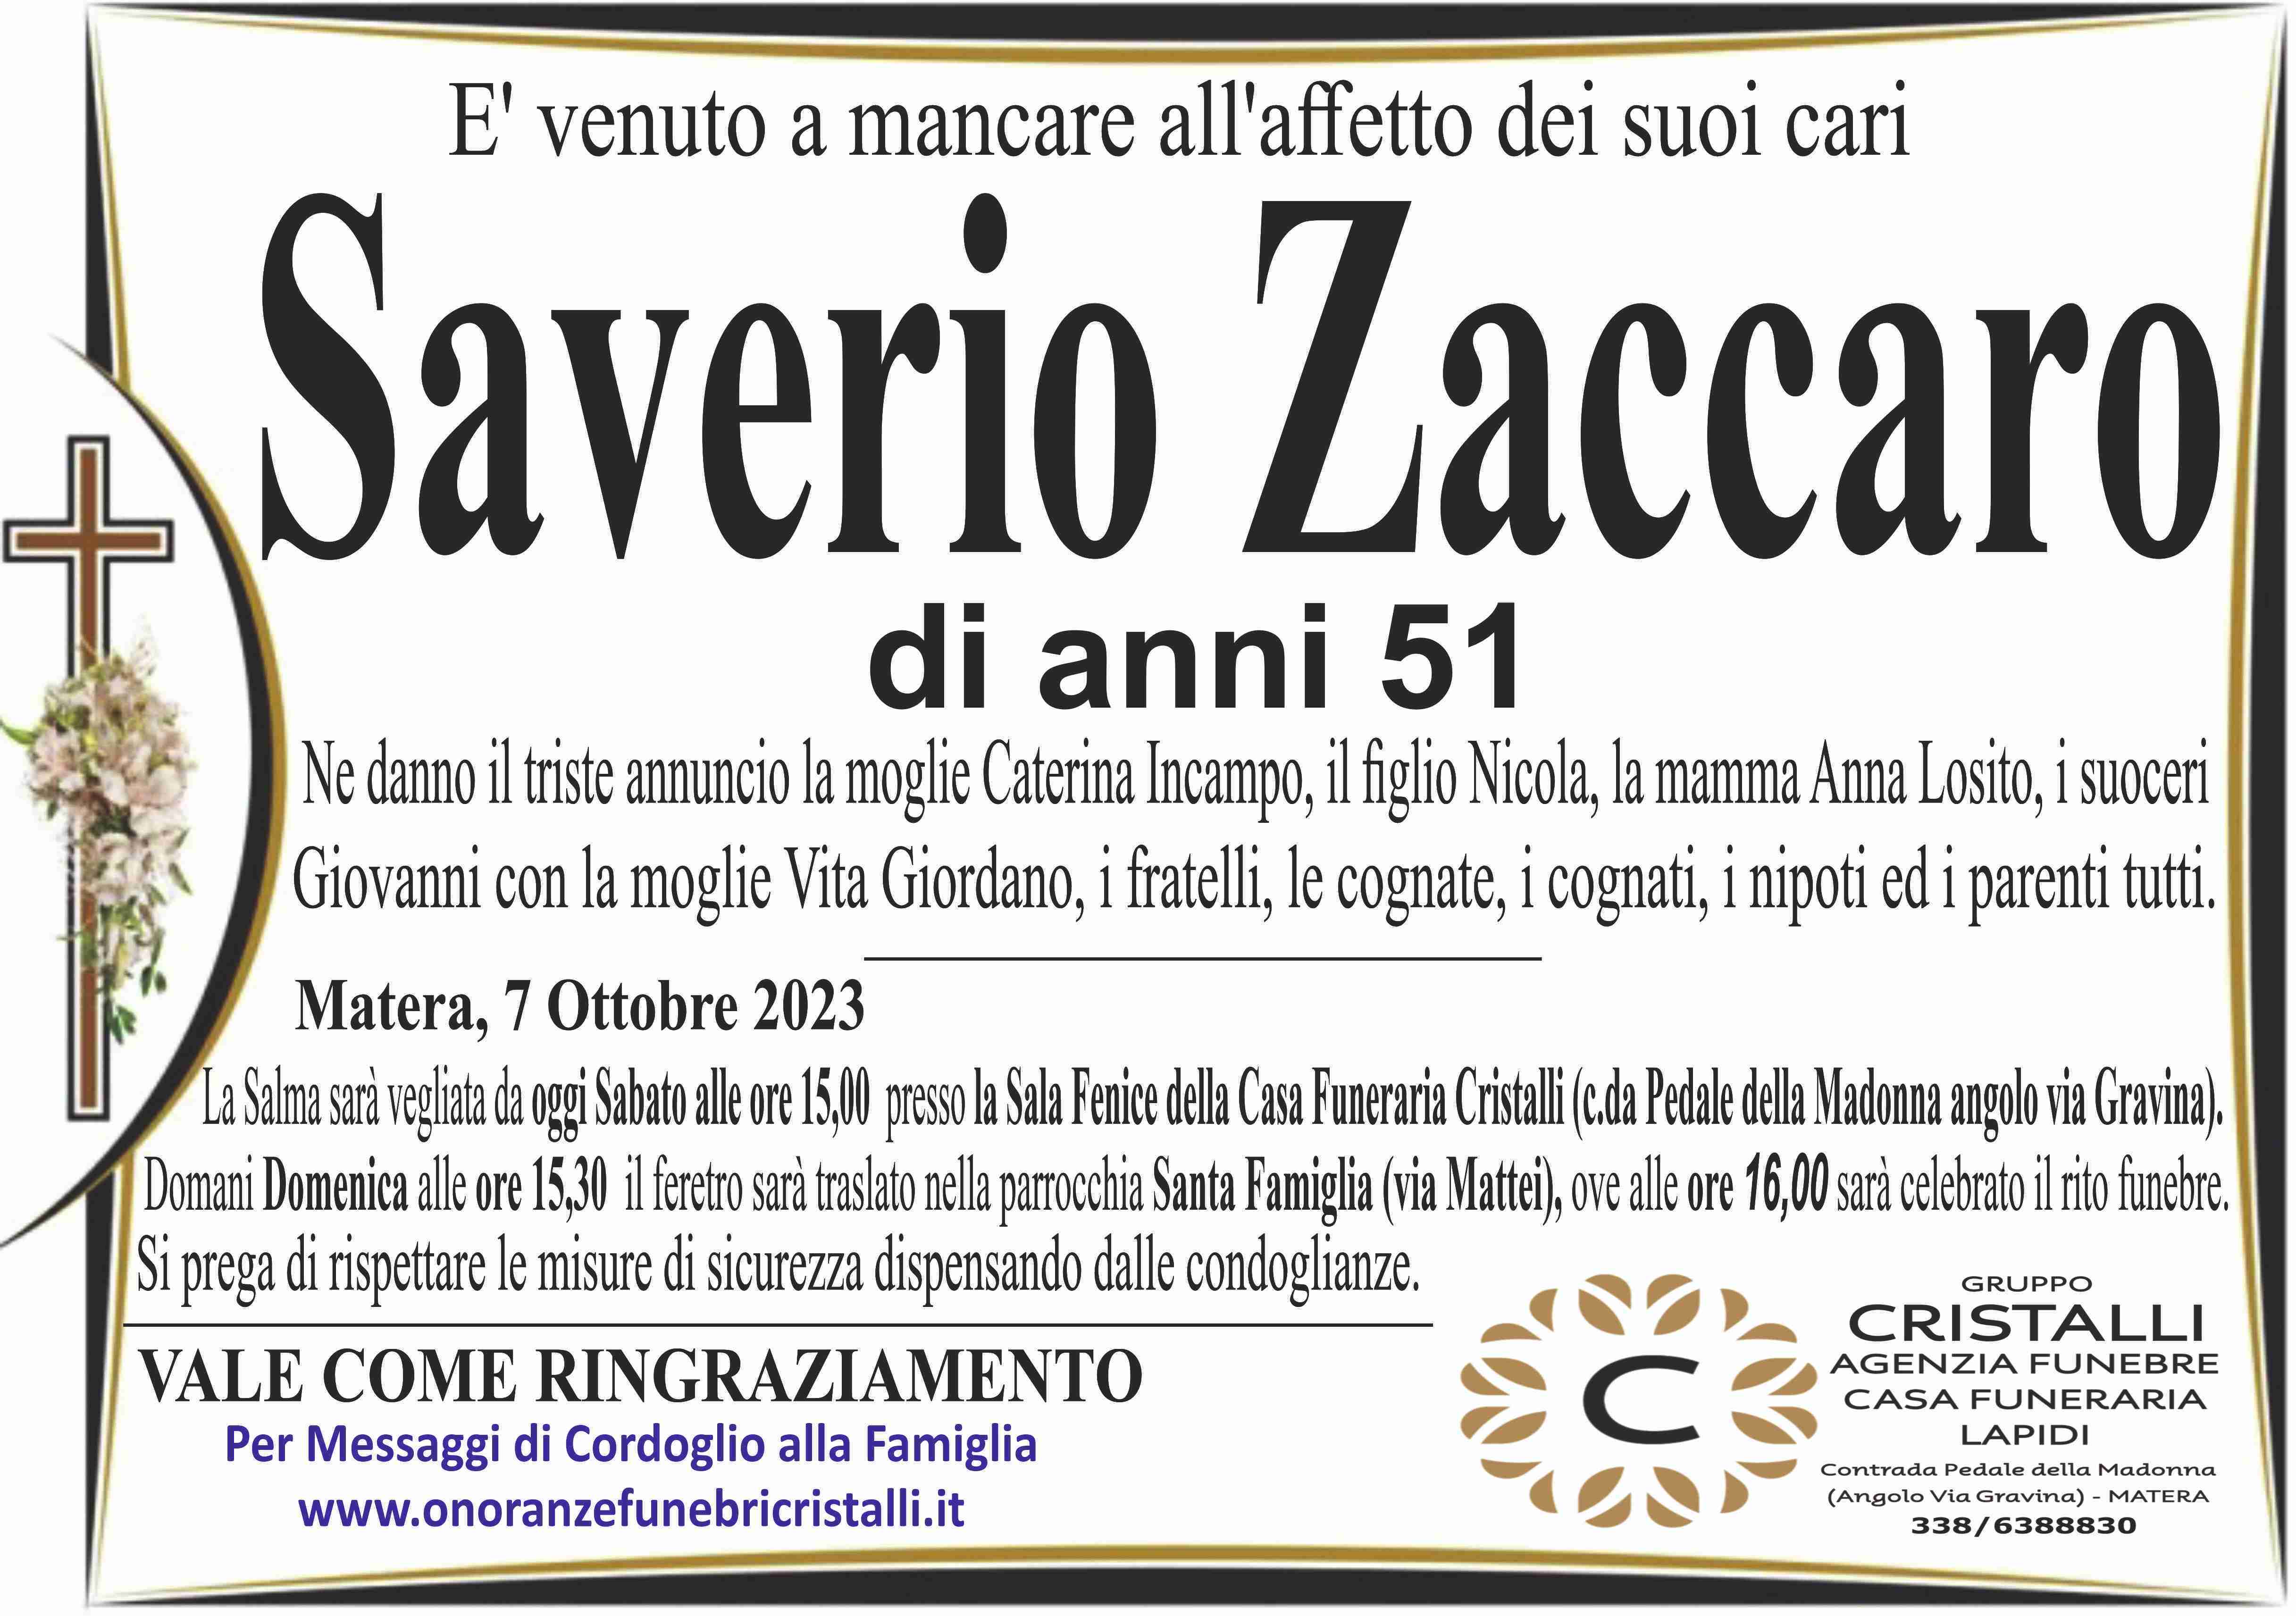 Saverio Zaccaro